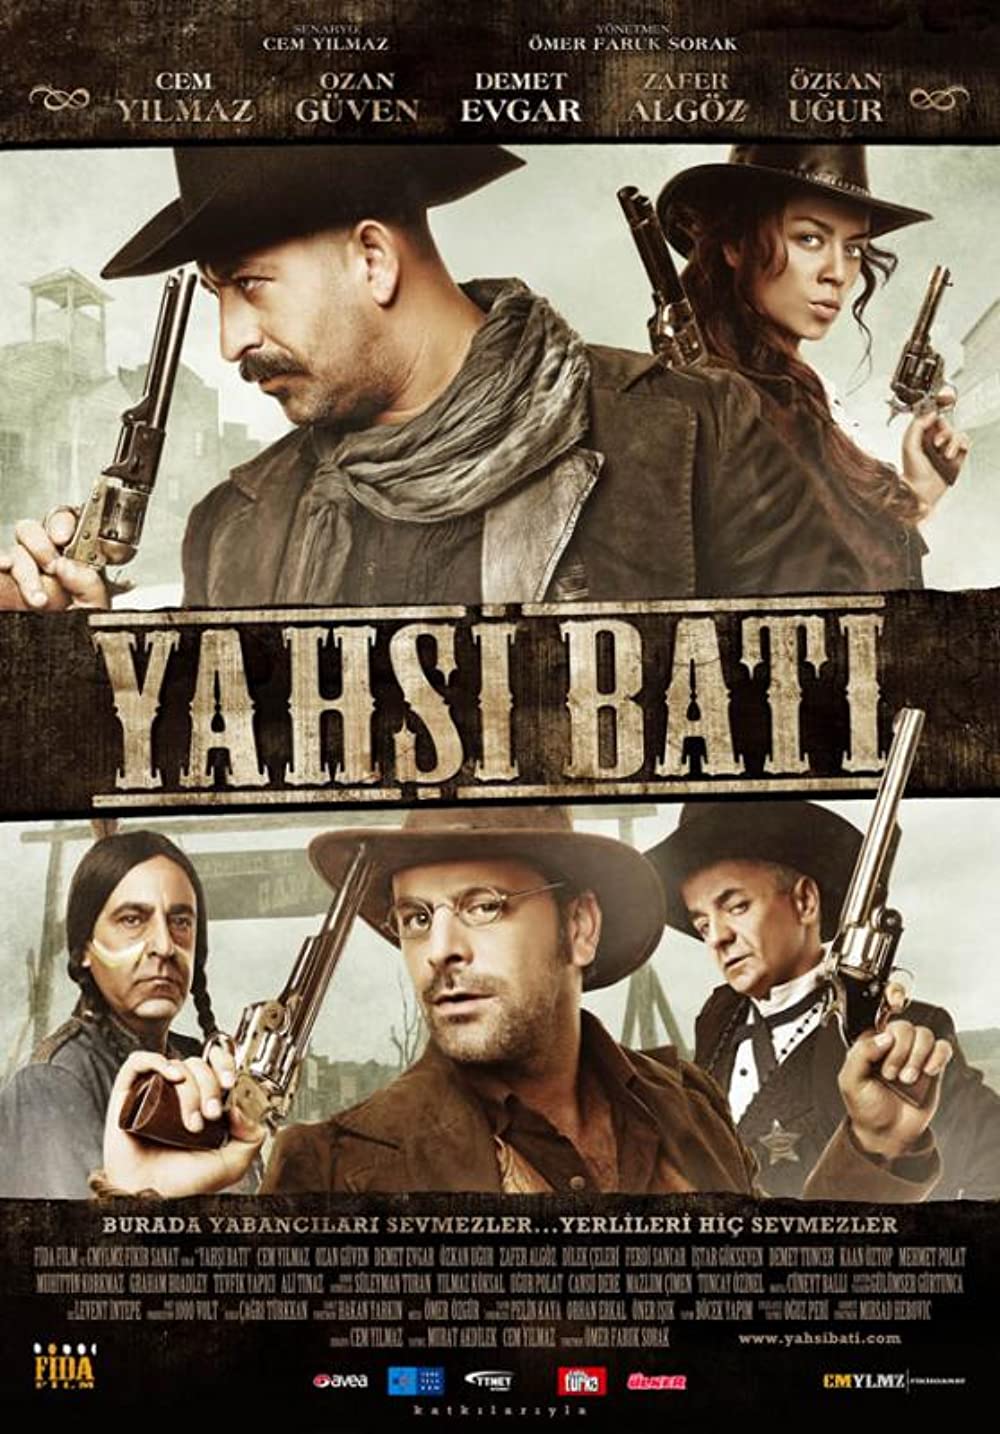 Download Yahsi bati Movie | Watch Yahsi Bati Hd